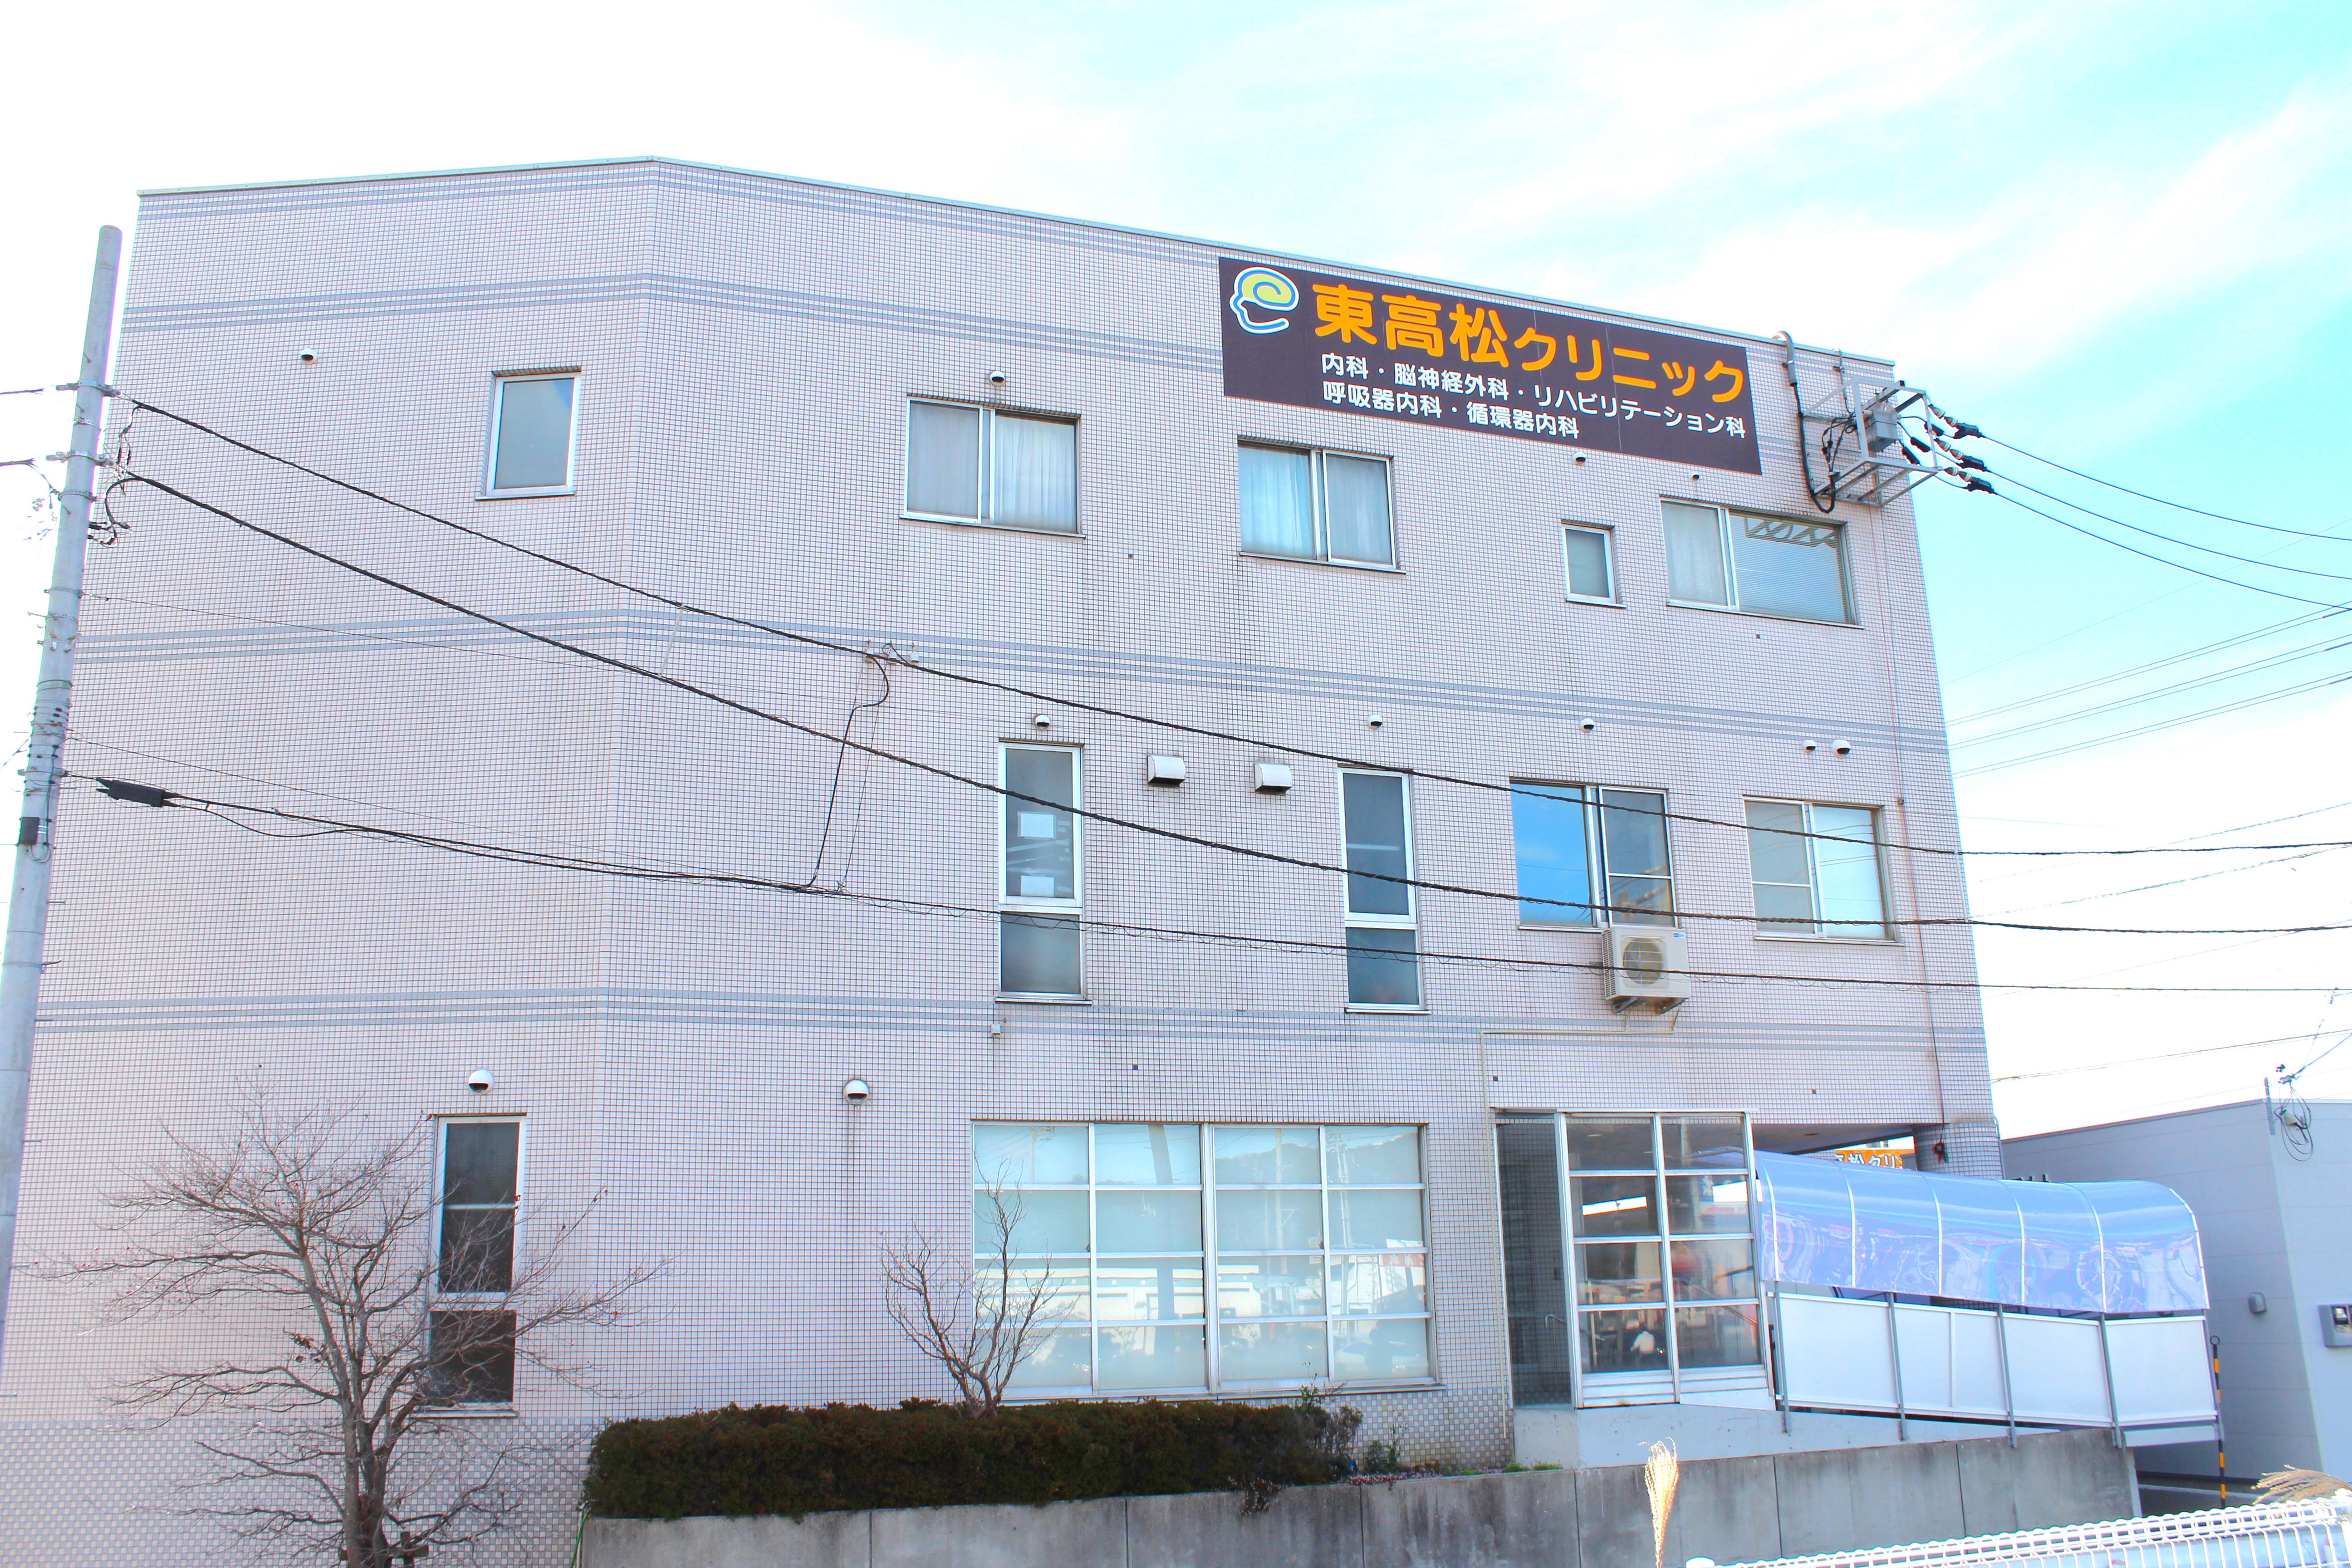 East-Takamatsu Clinic